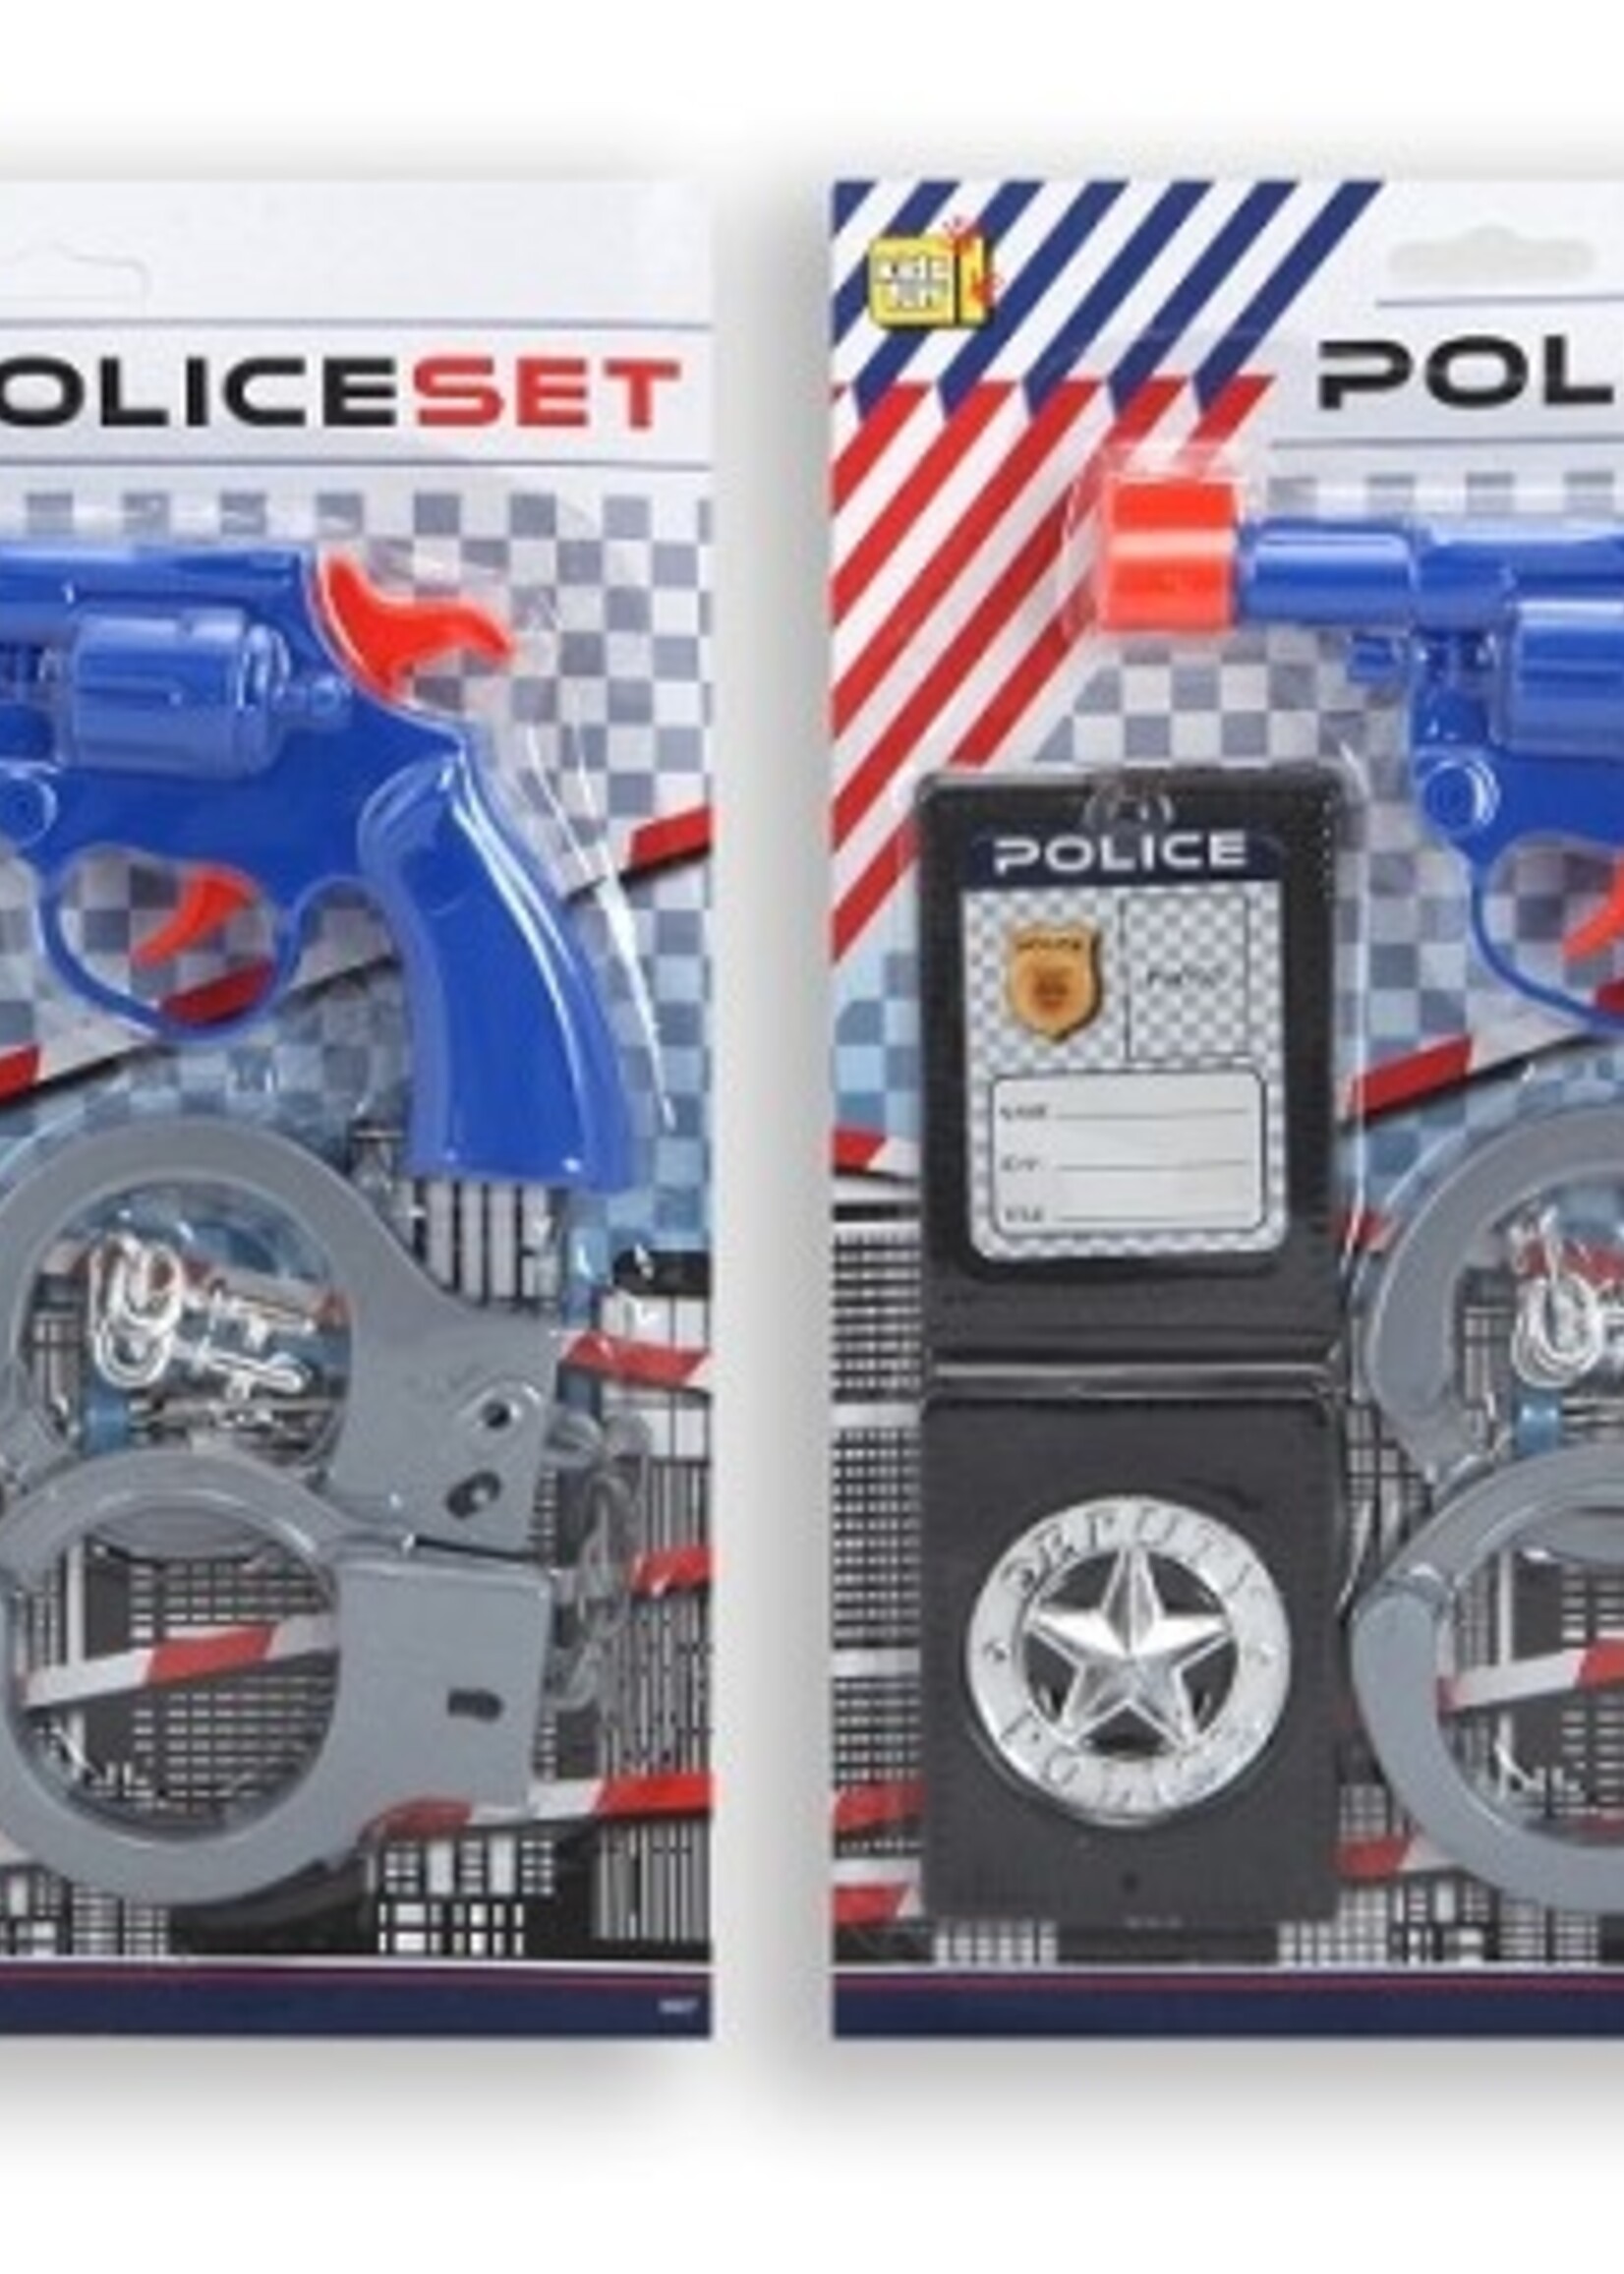 Politieset met pistool, handboeien en badge 28,5 X 20,5 X 2 cm per stuk